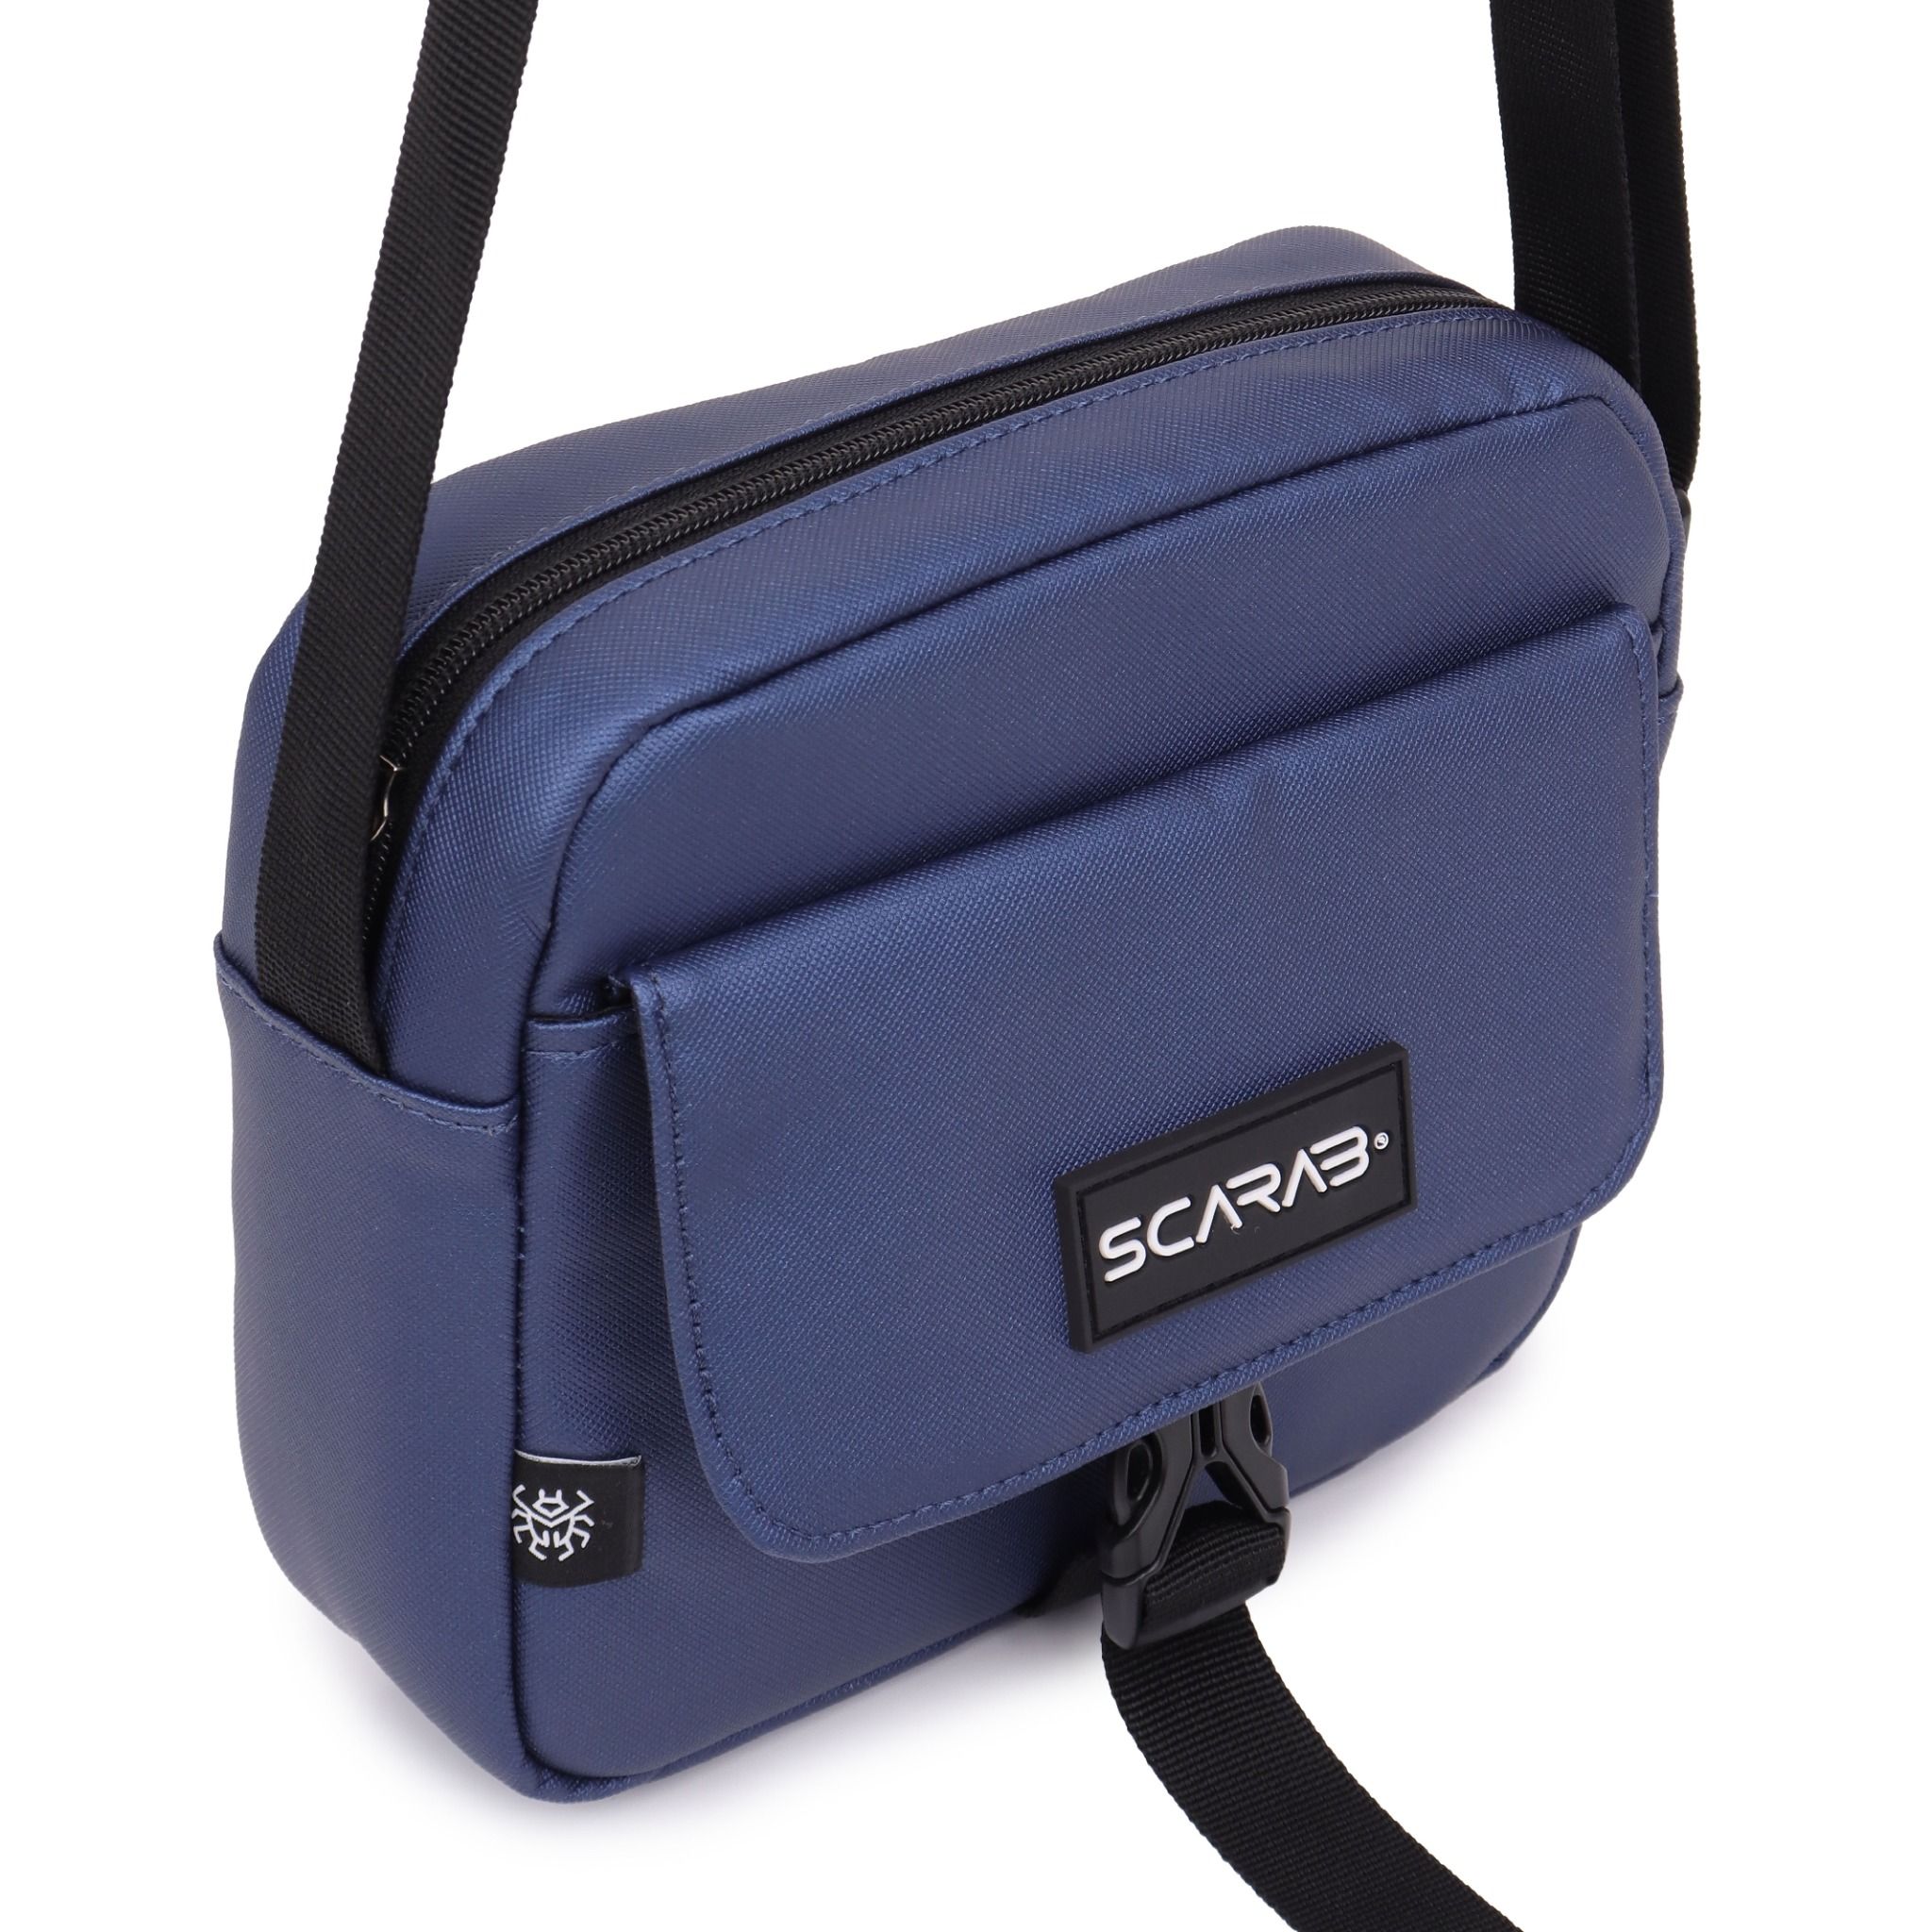  Scarab Urban Leather Shoulder Bag - Navy 